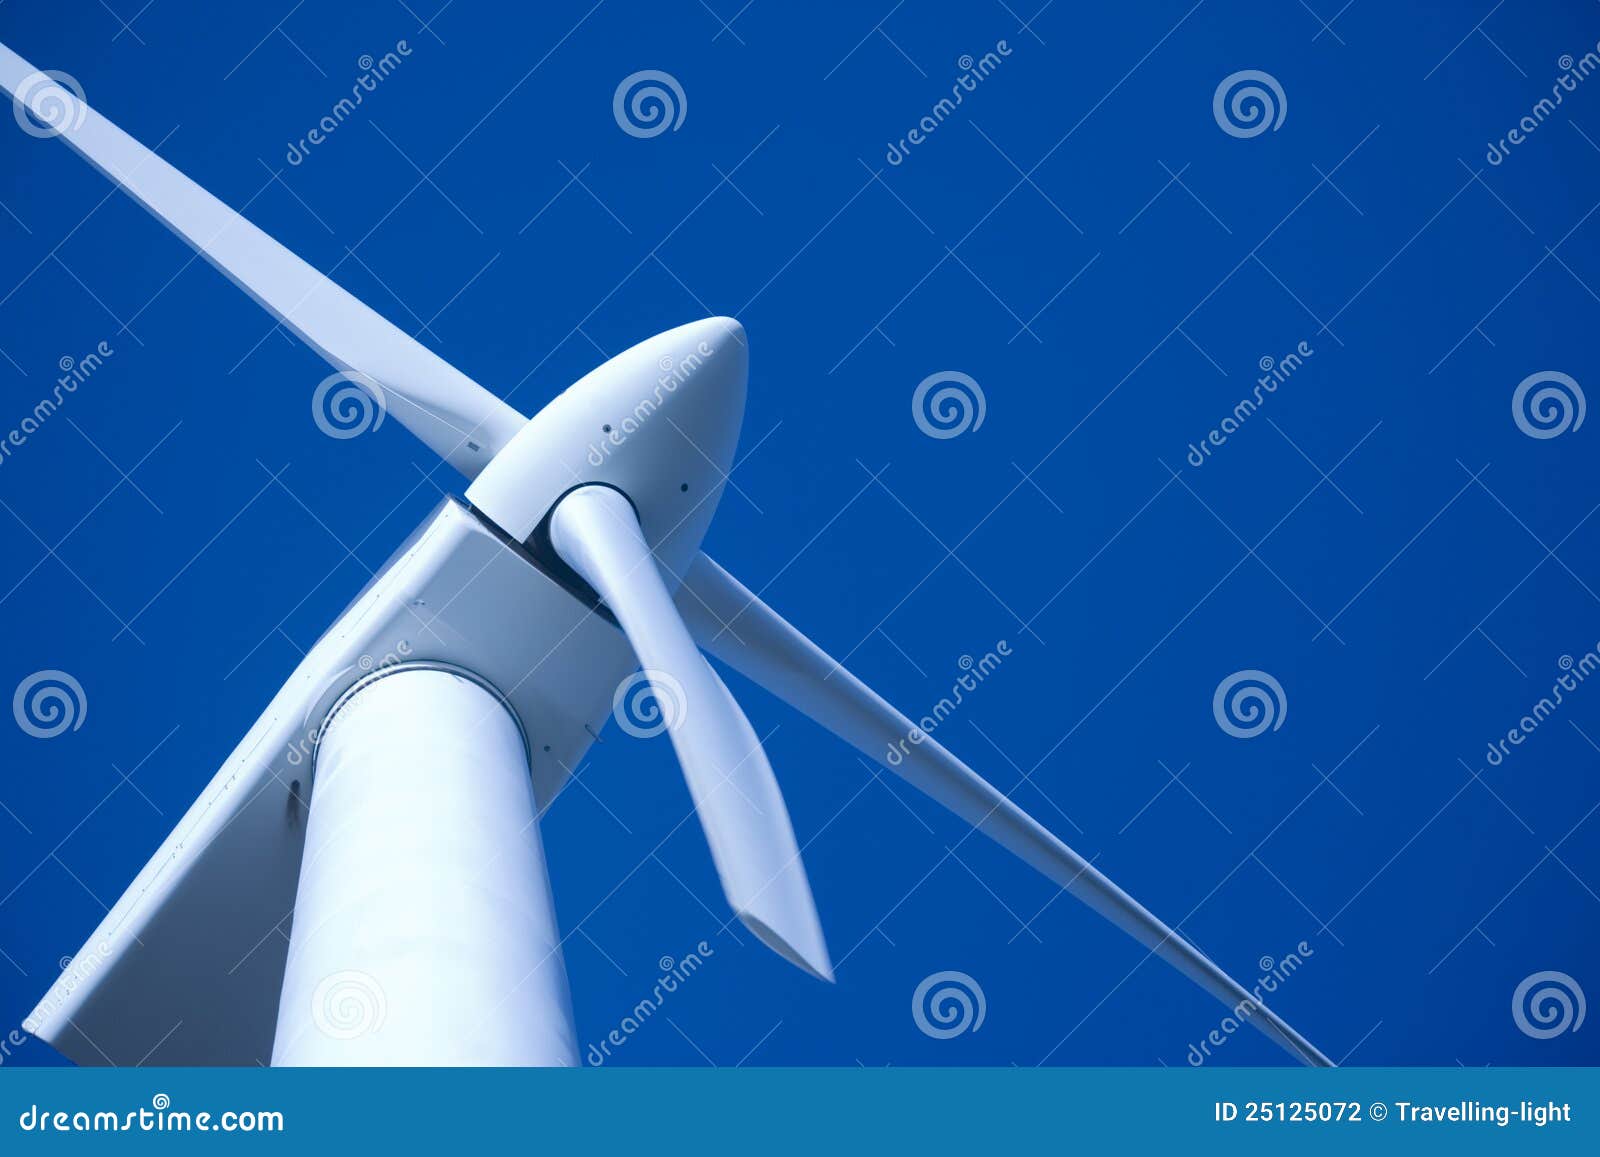 wind turbine tungsten